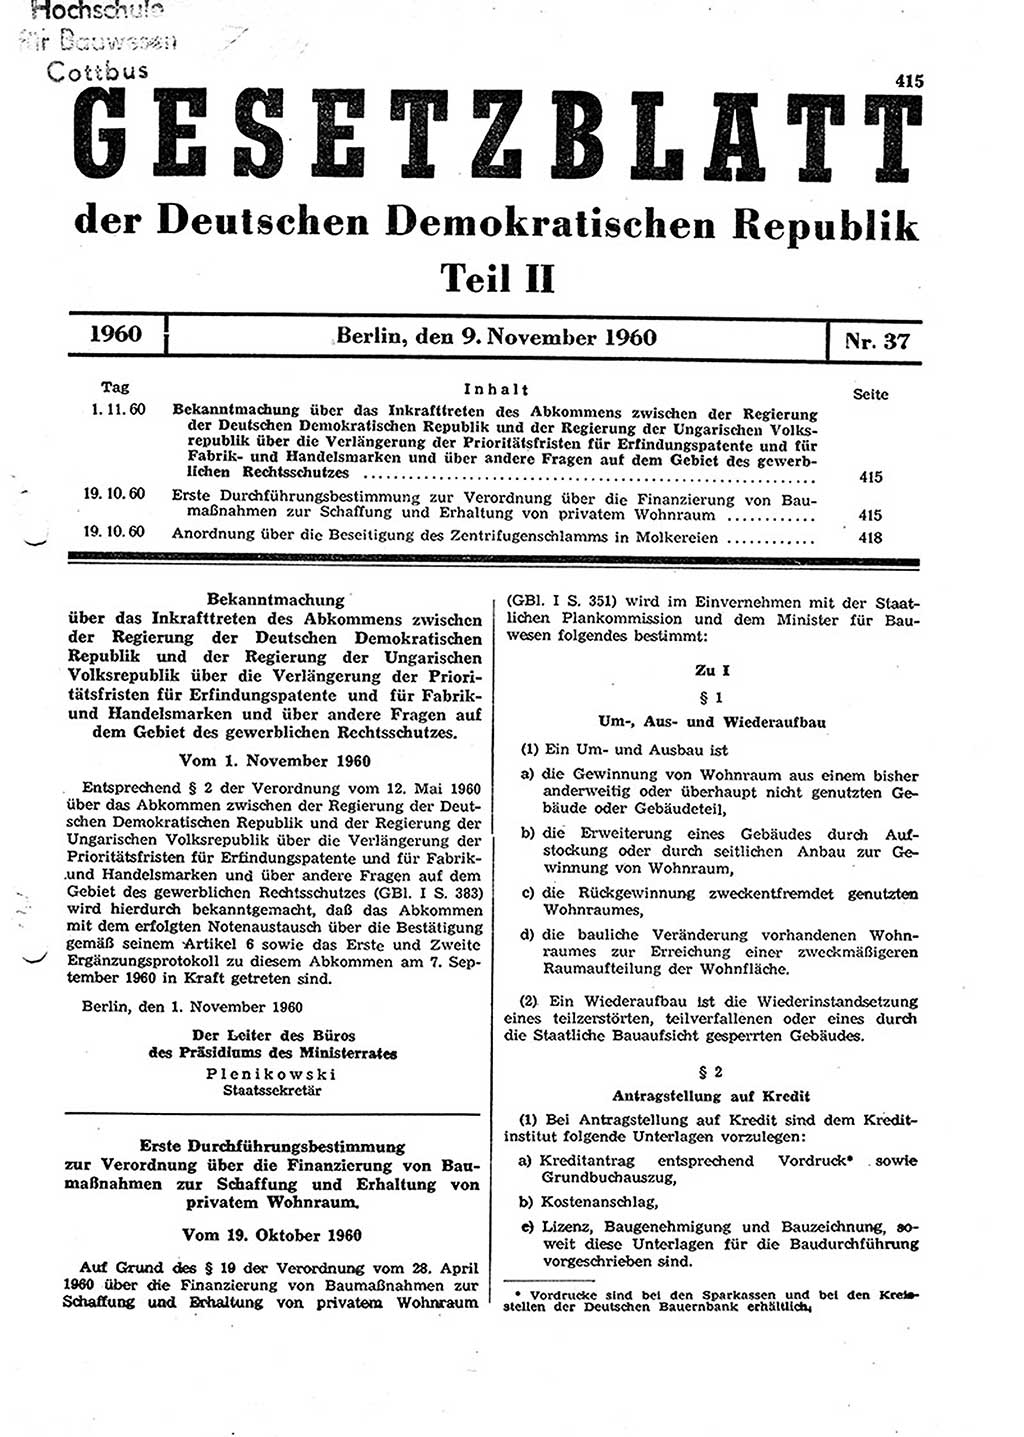 Gesetzblatt (GBl.) der Deutschen Demokratischen Republik (DDR) Teil ⅠⅠ 1960, Seite 415 (GBl. DDR ⅠⅠ 1960, S. 415)